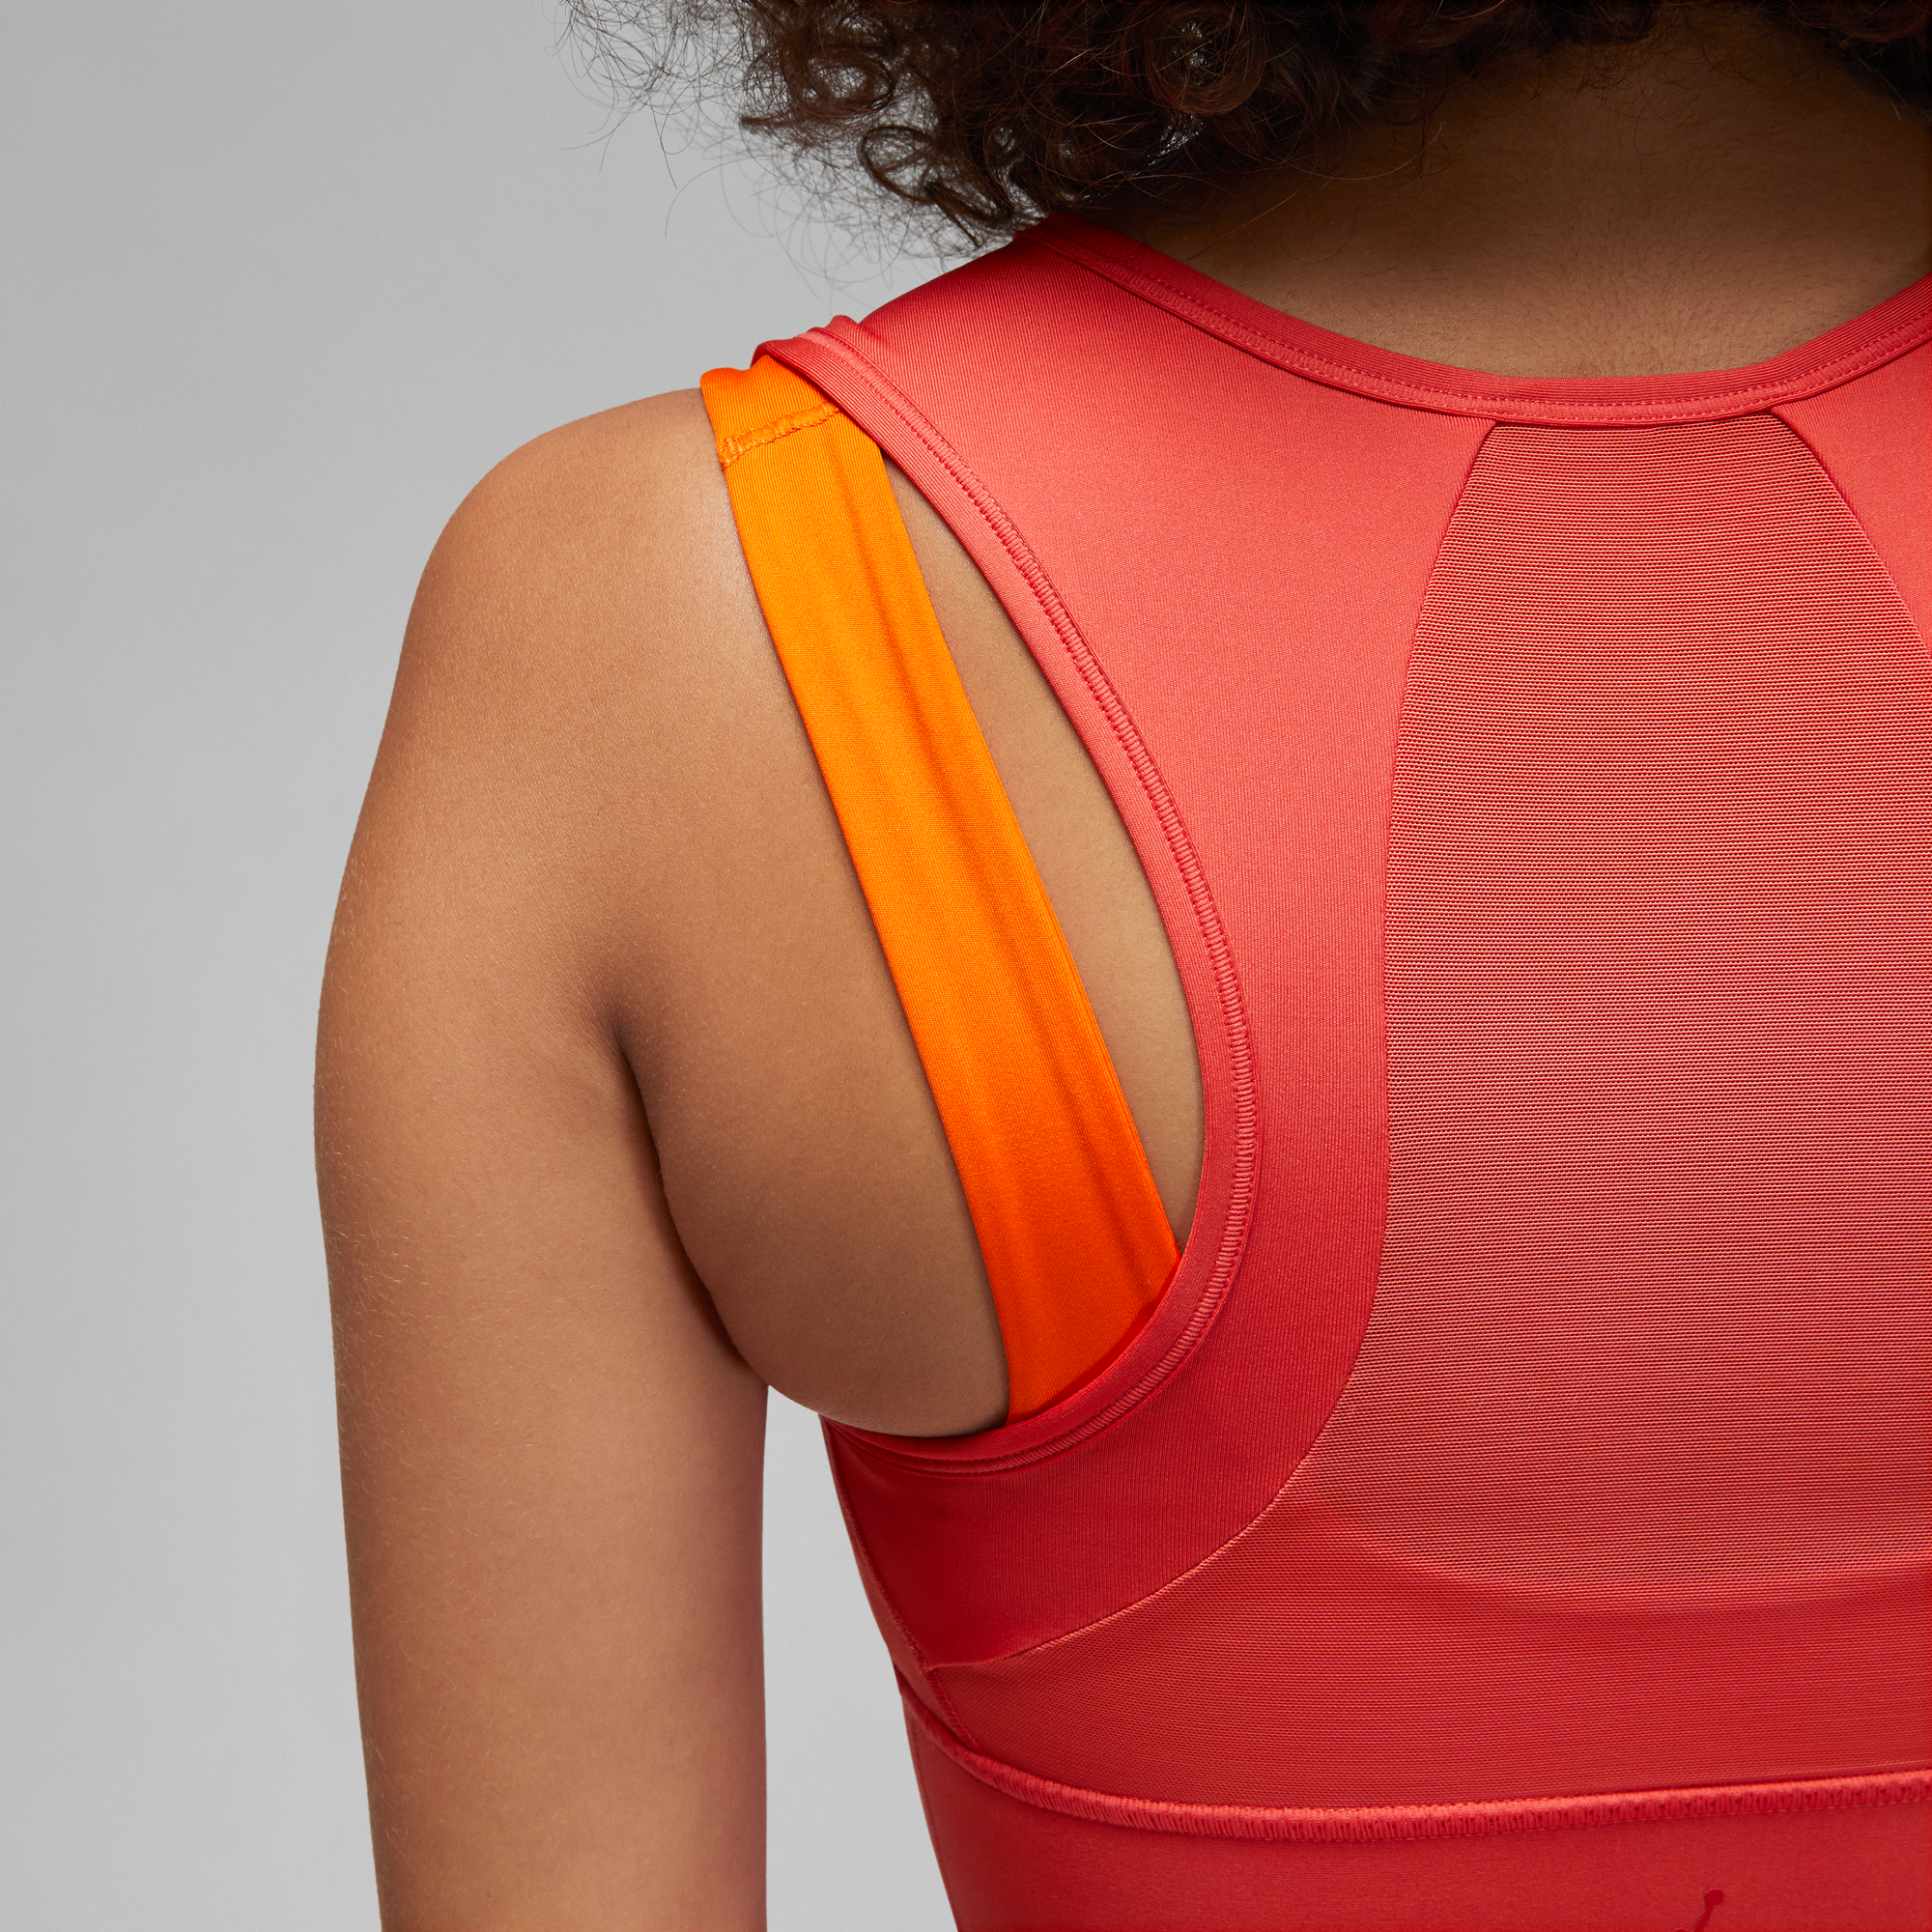 Nike Dry-Fit Sports Bra - Women's Medium in Orange w Purple Band & T-Back